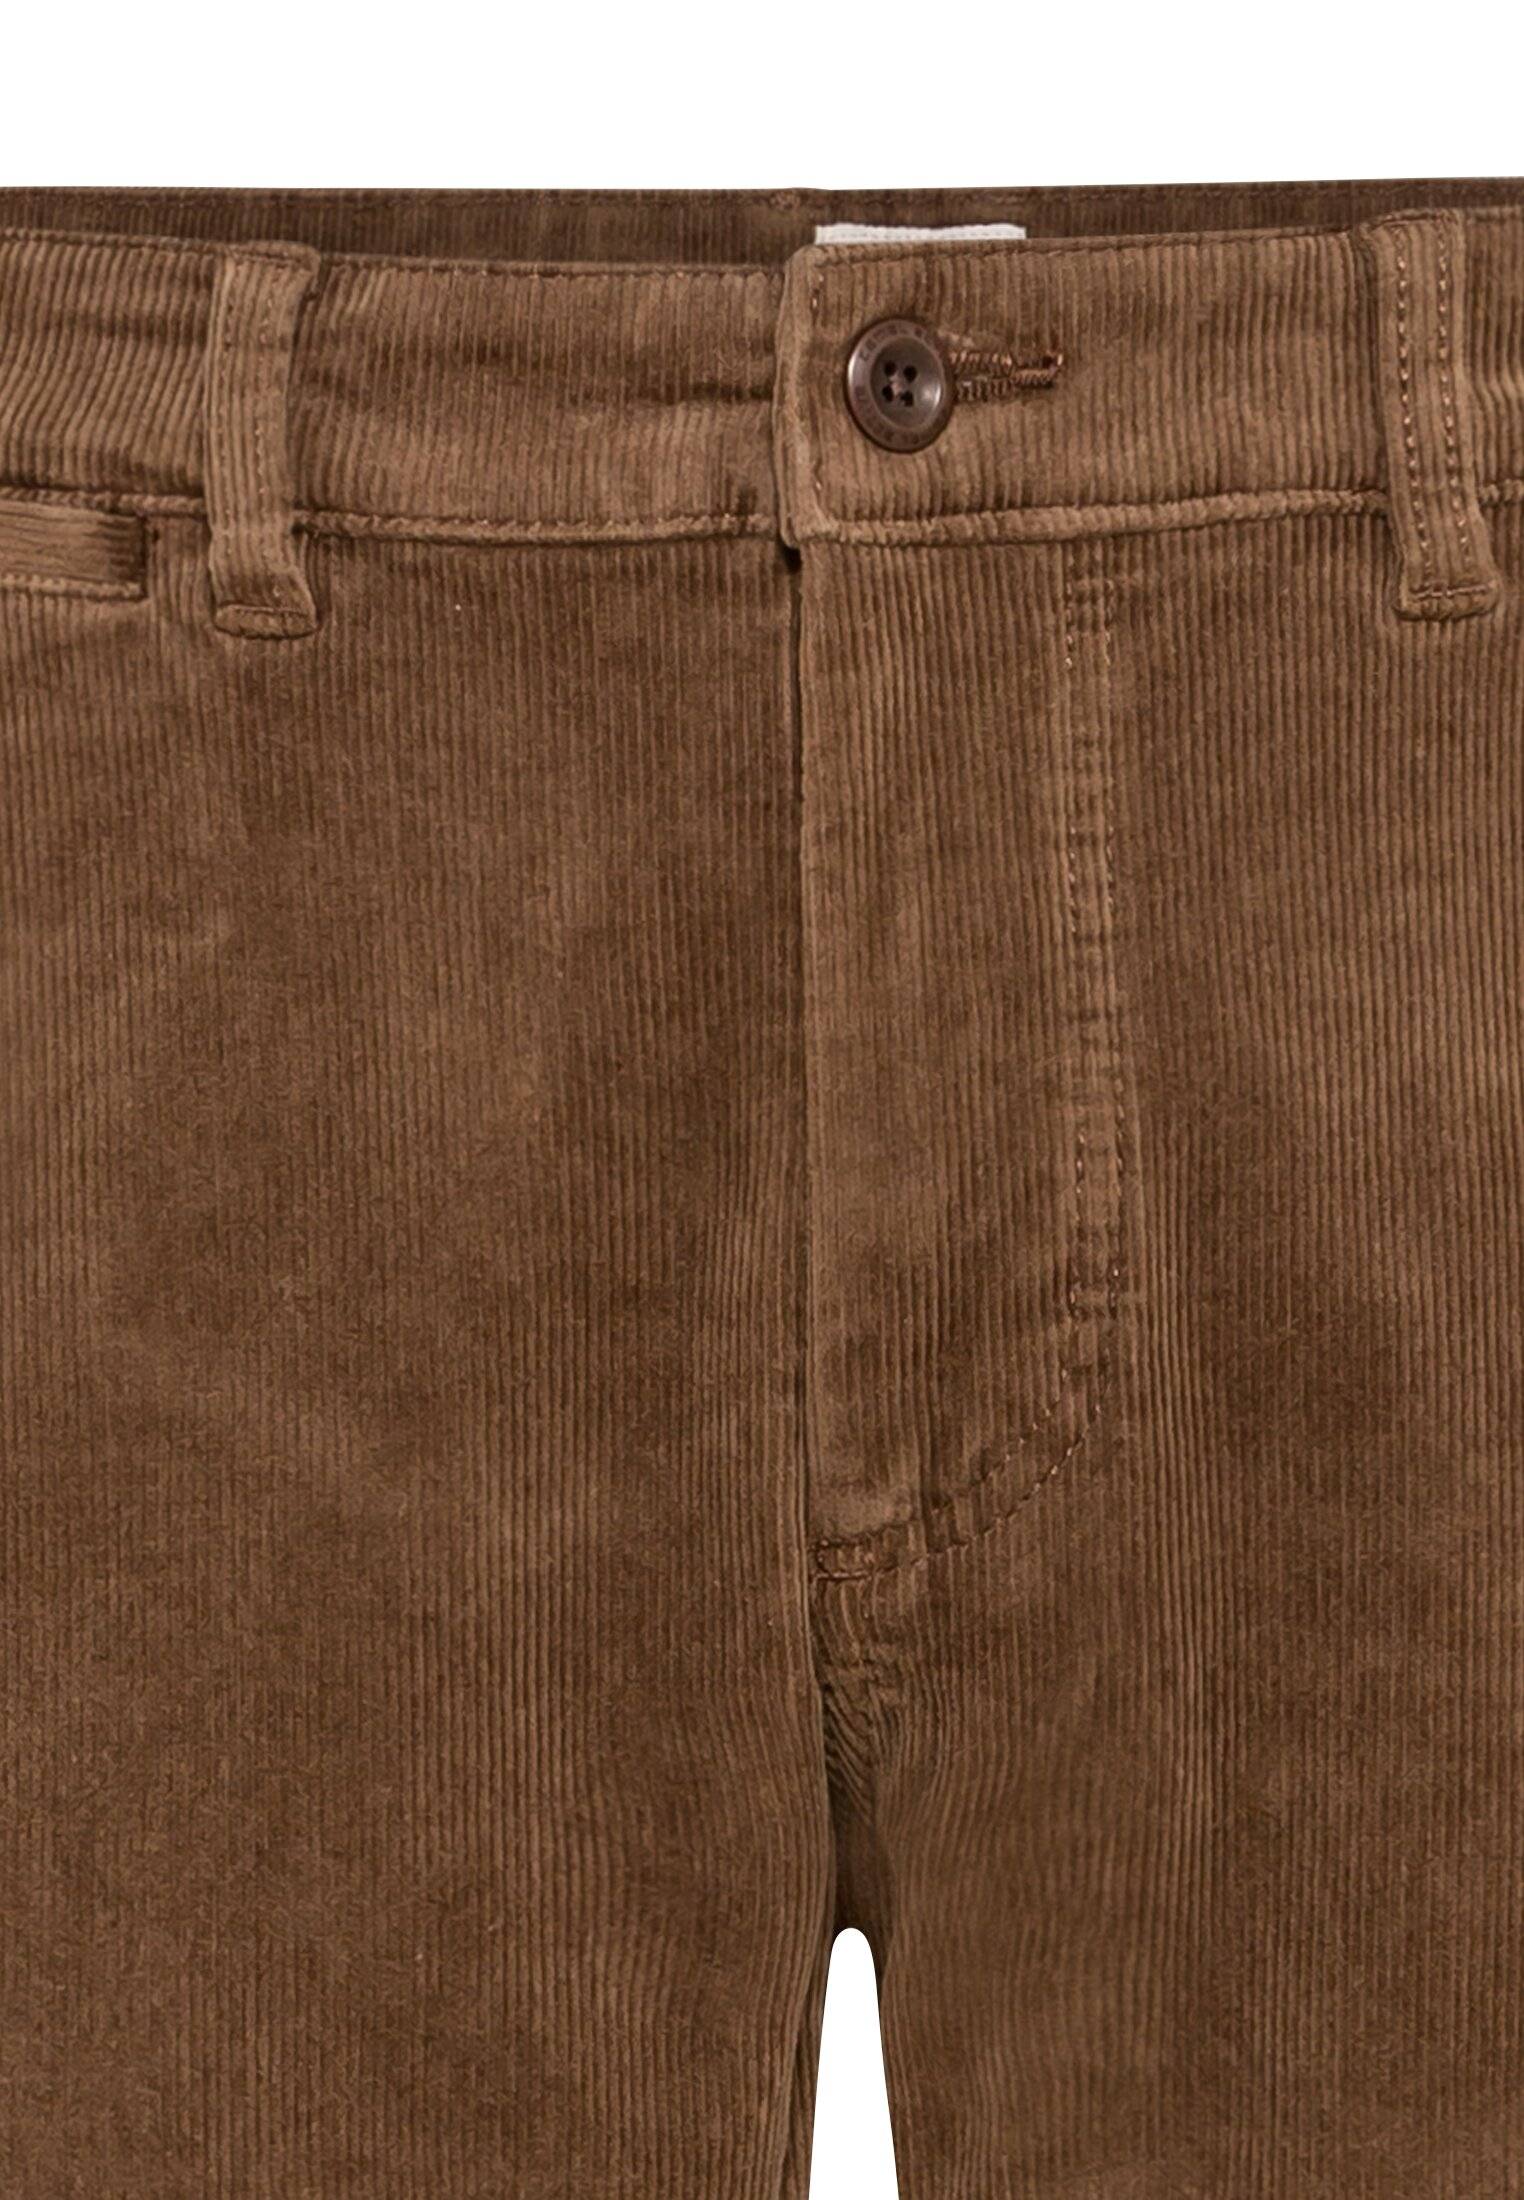 Мужские брюки Camel Active, коричневые, цвет коричневый, размер 36 - фото 3